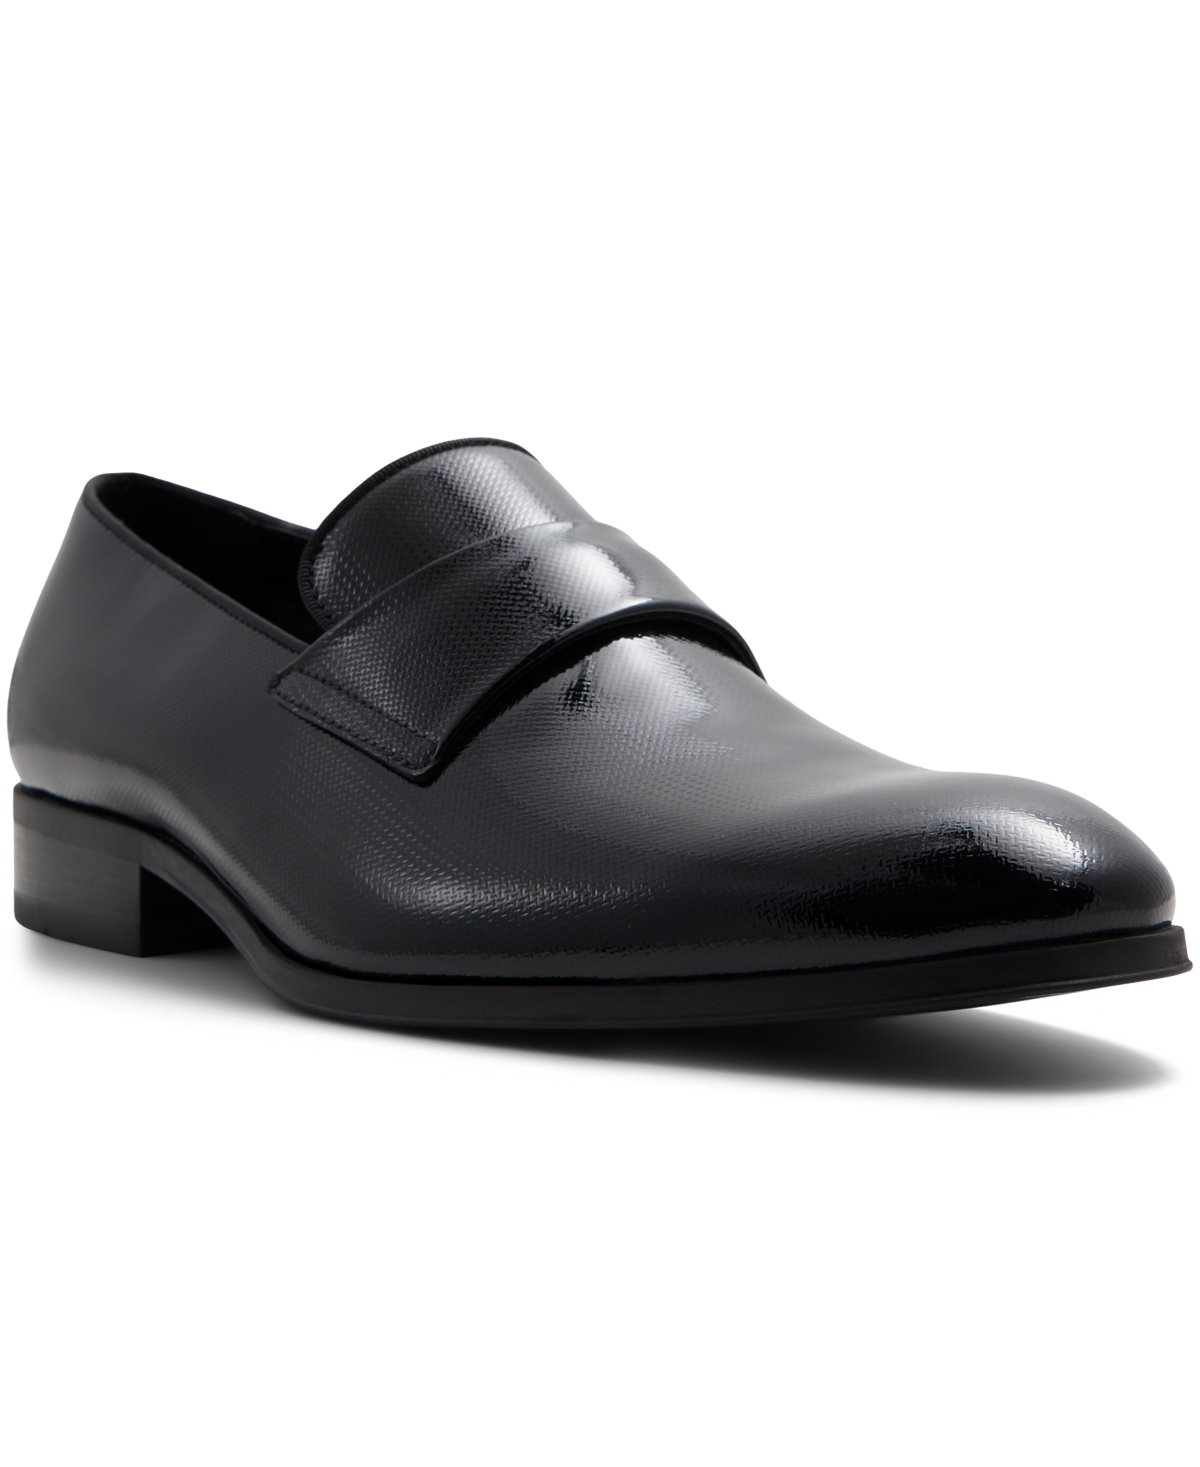 Men's Doncaster Dress Loafers - Black